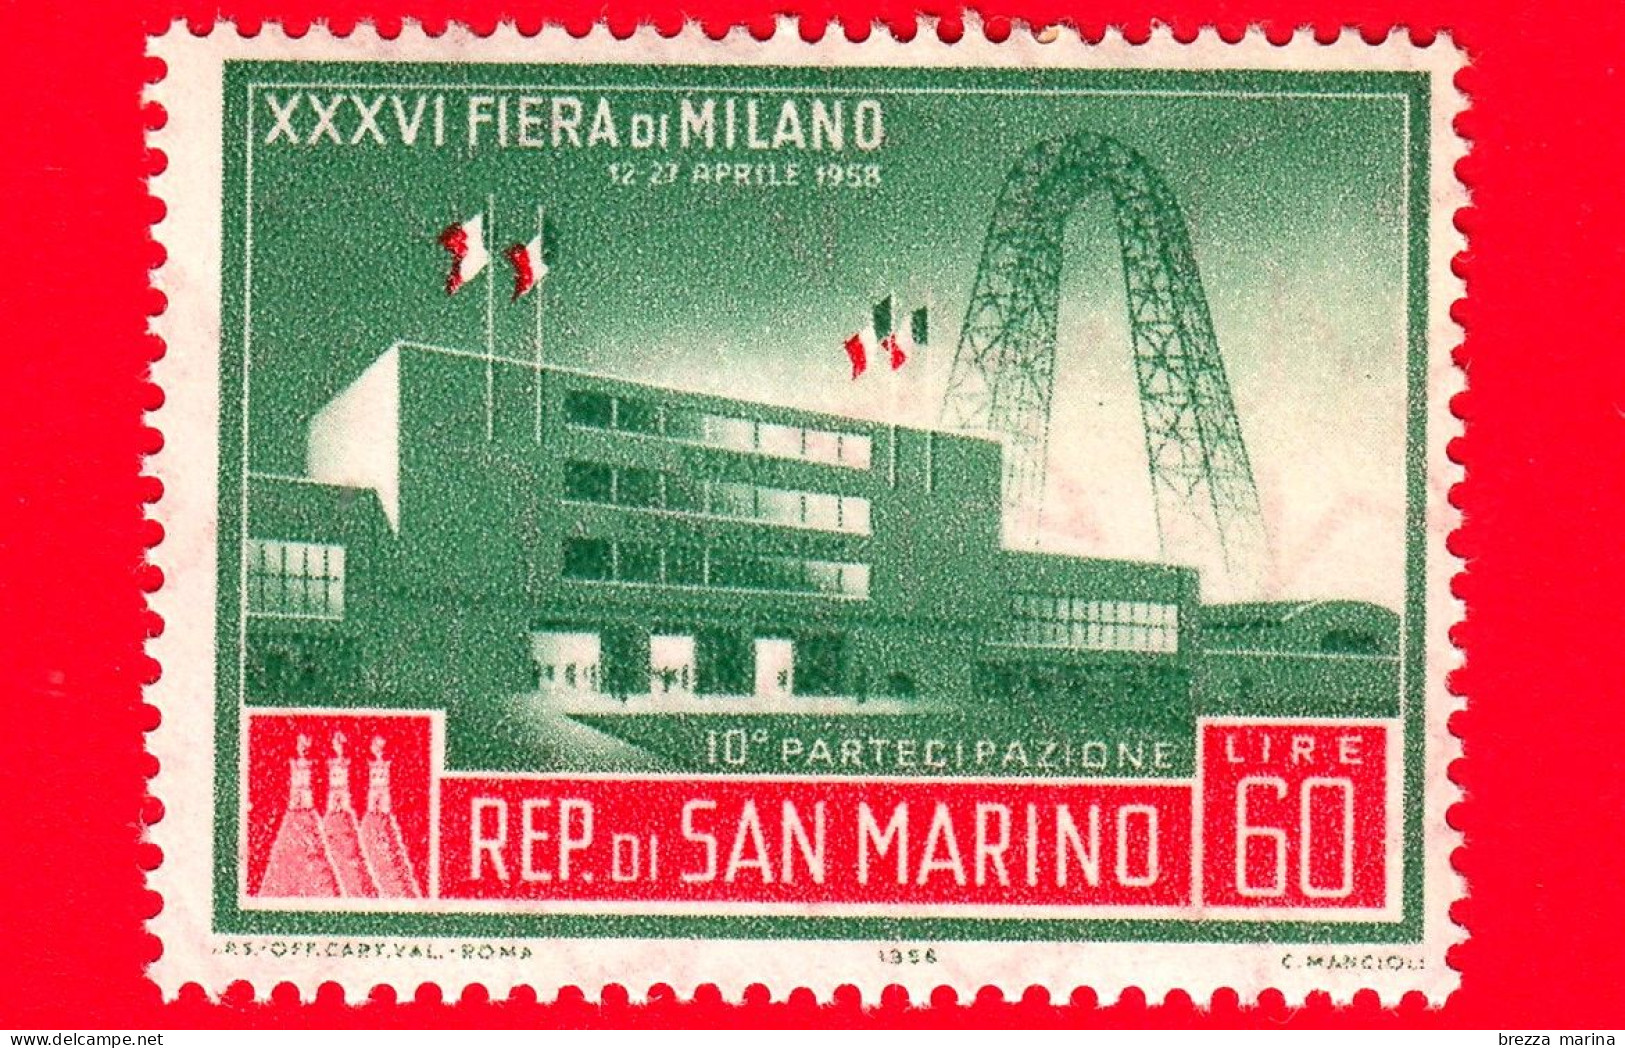 Nuovo - MNH - SAN MARINO - 1958 - XXXVI Fiera Di Milano - 10 Partecipazione - 60 - Neufs